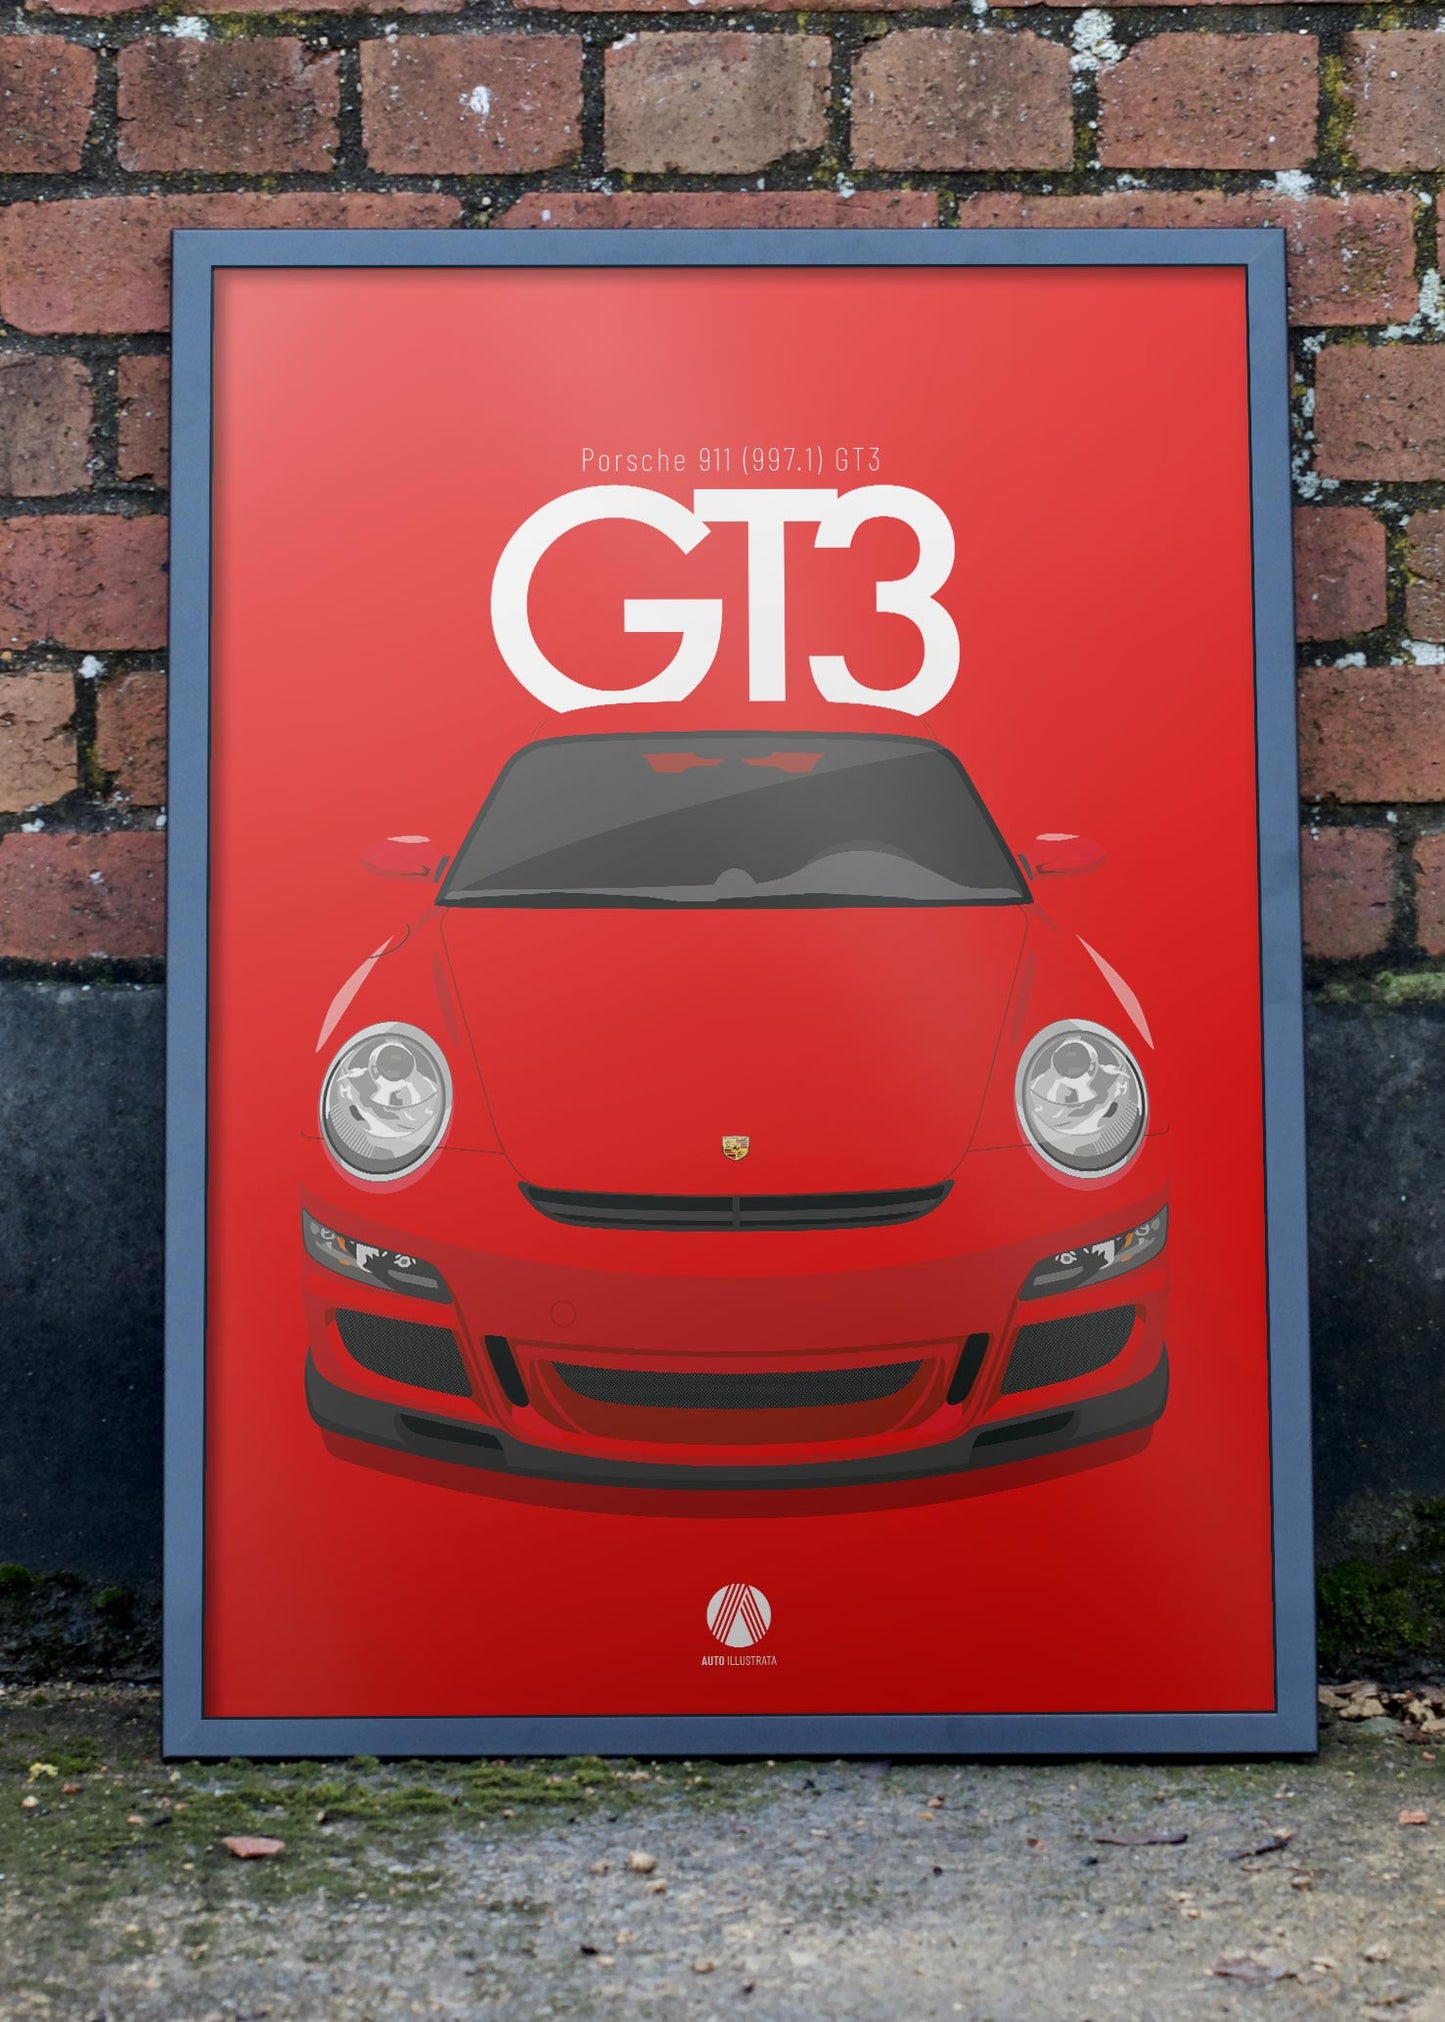 2006 Porsche 911 (997.1) GT3 Guards Red - poster print